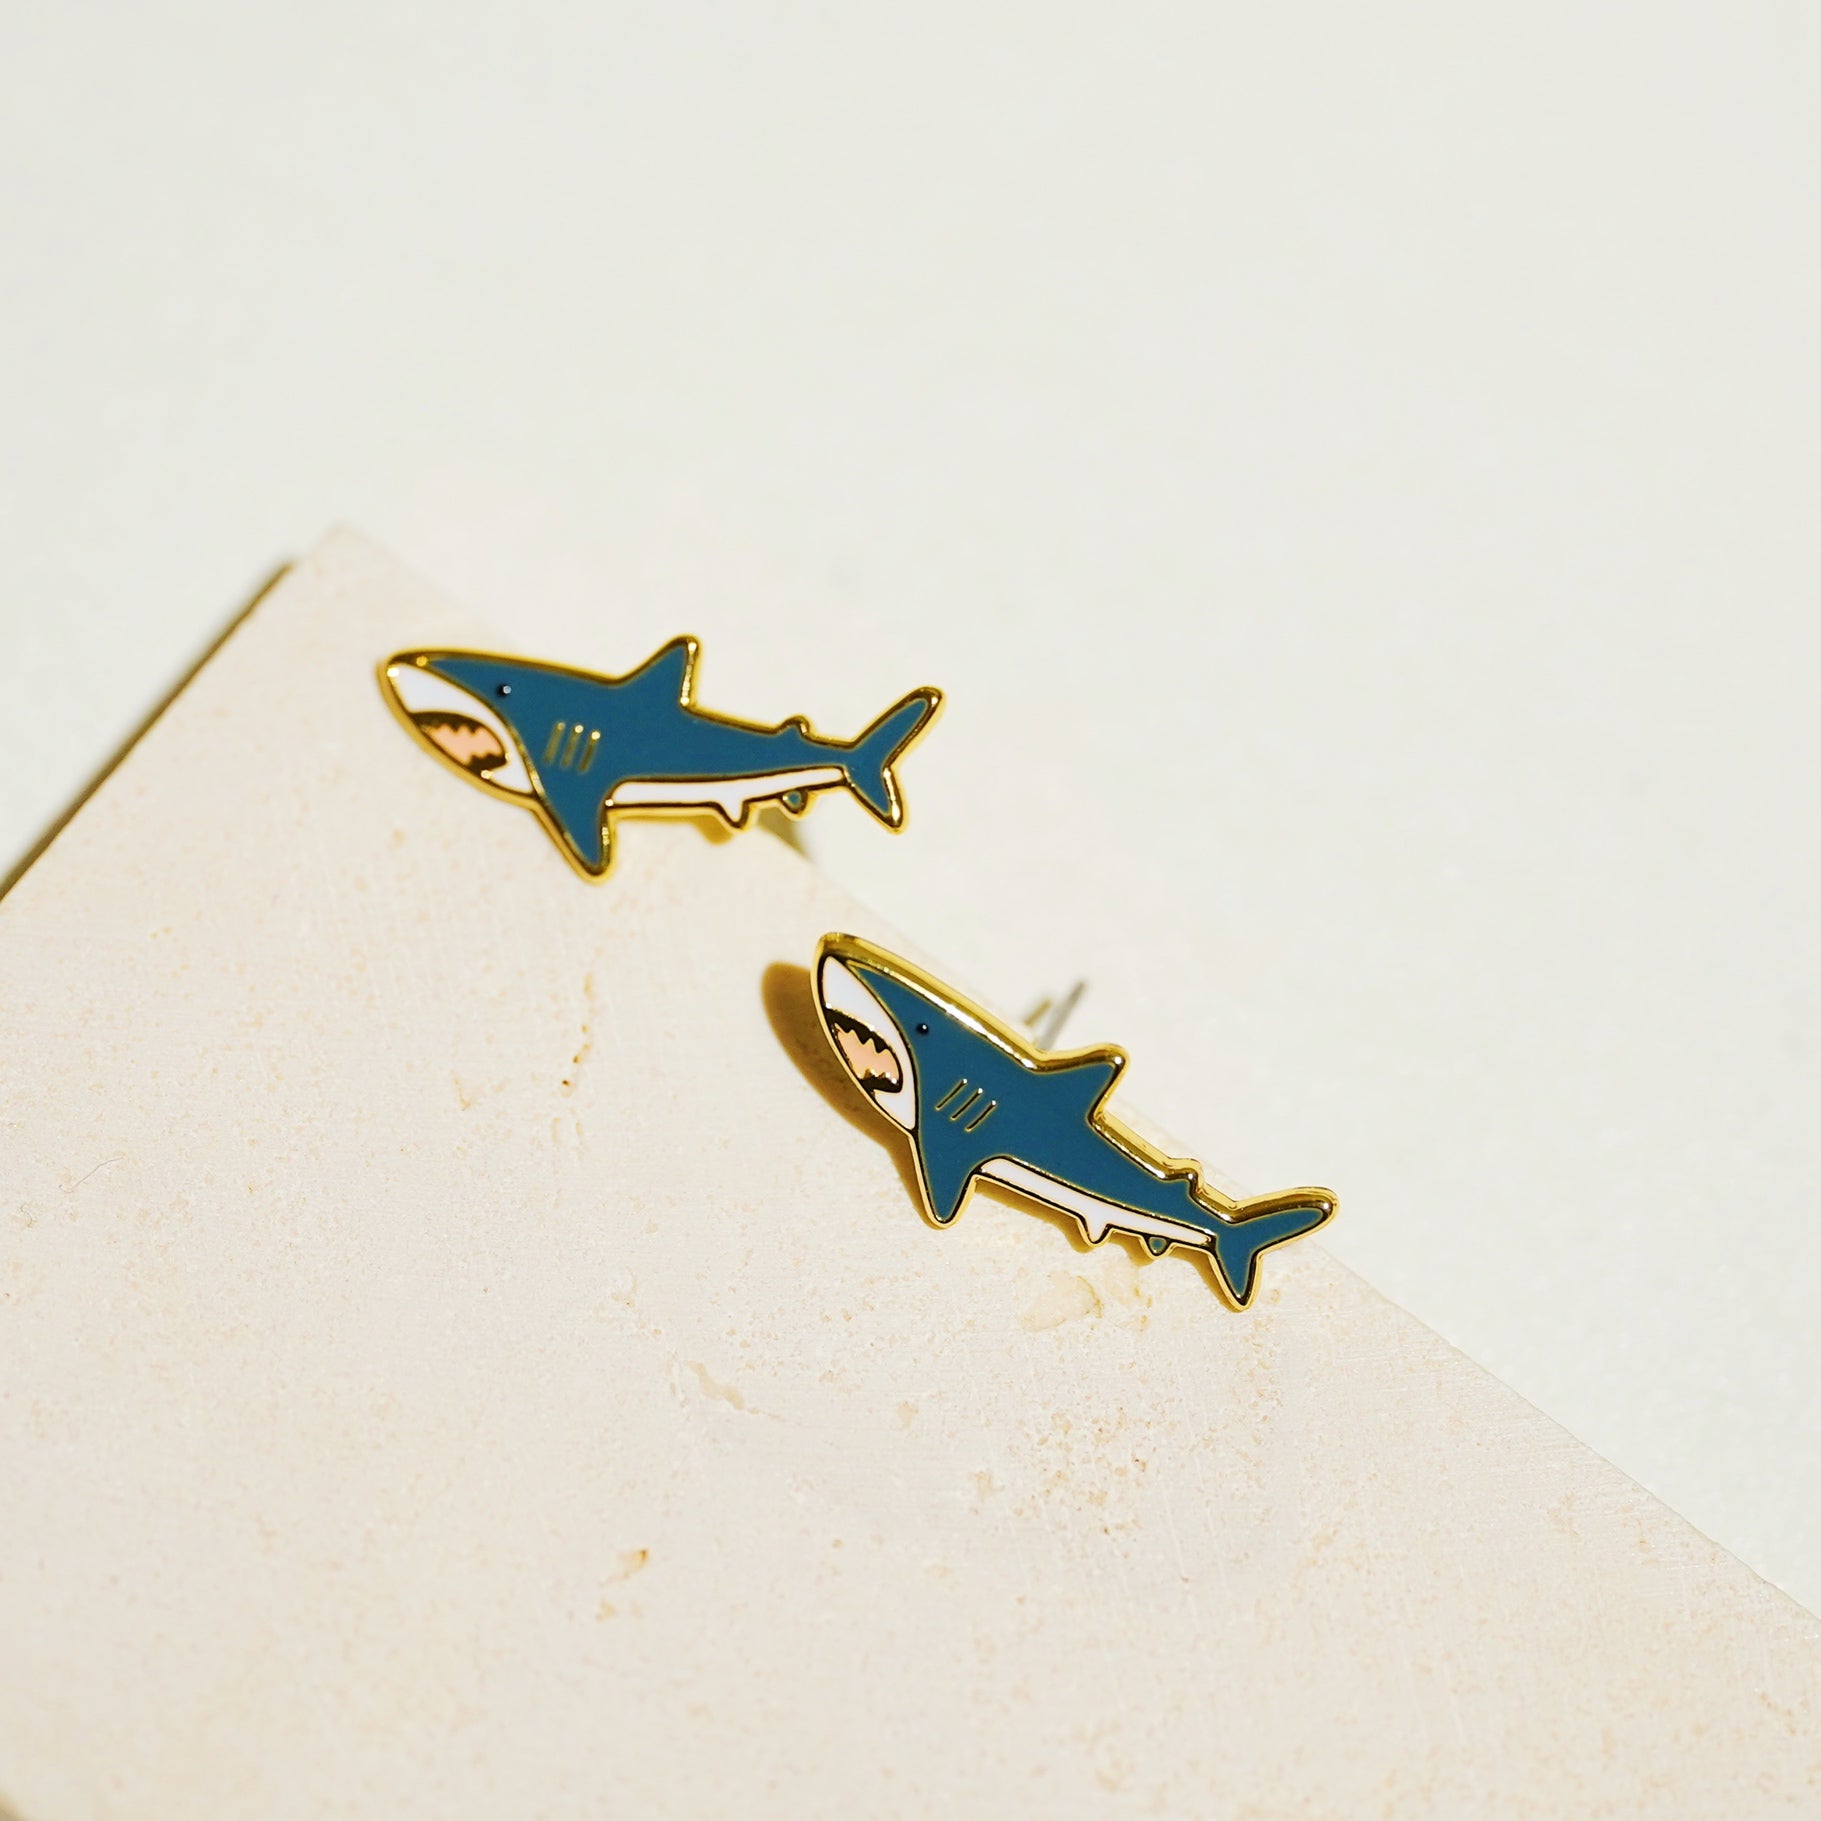 Little Oh - Stud Earrings (Great White Shark)